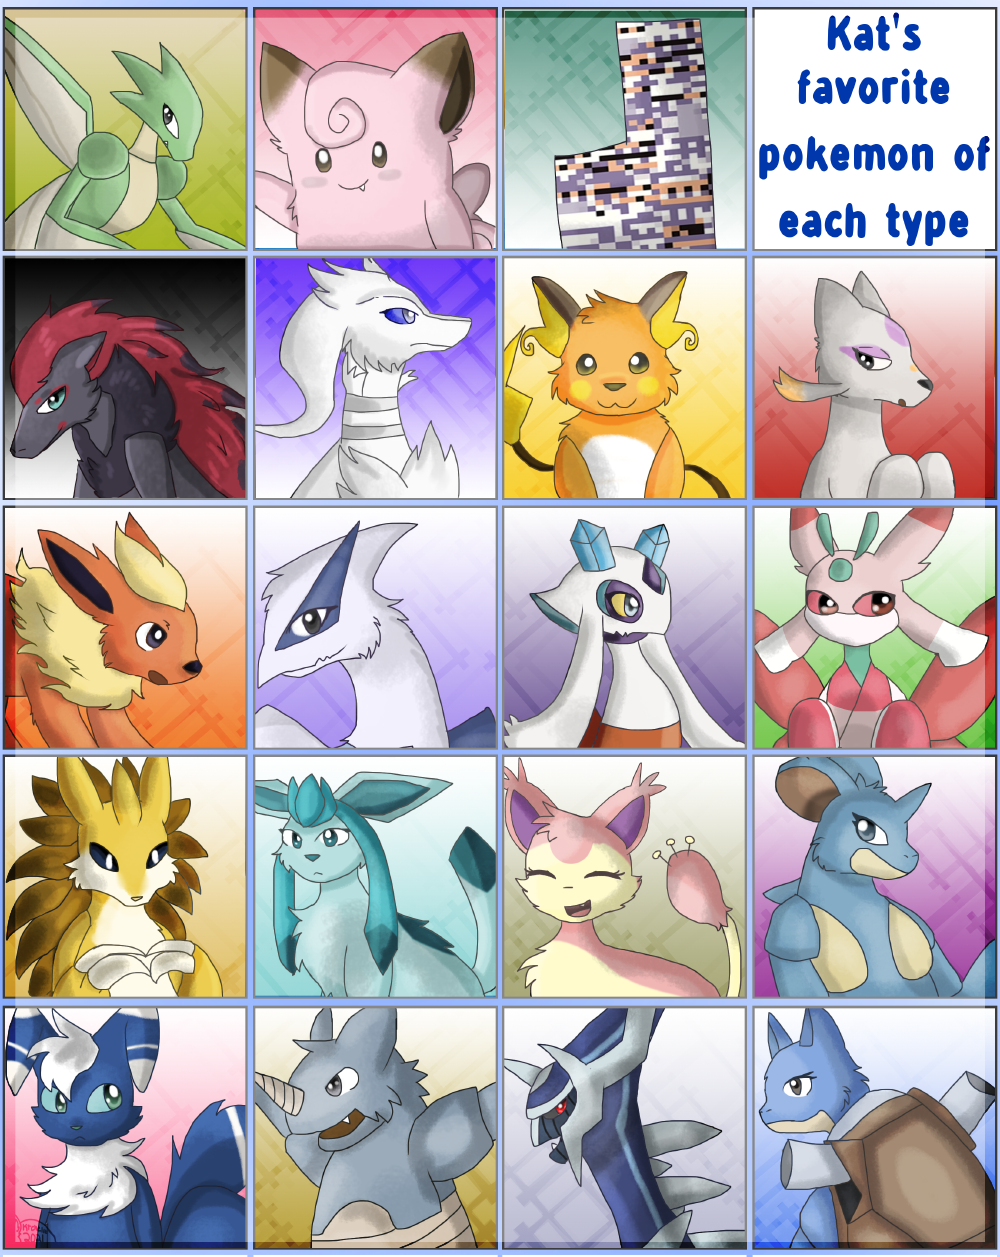 My favorite Pokemon of each type by ktchelle -- Fur Affinity [dot] net